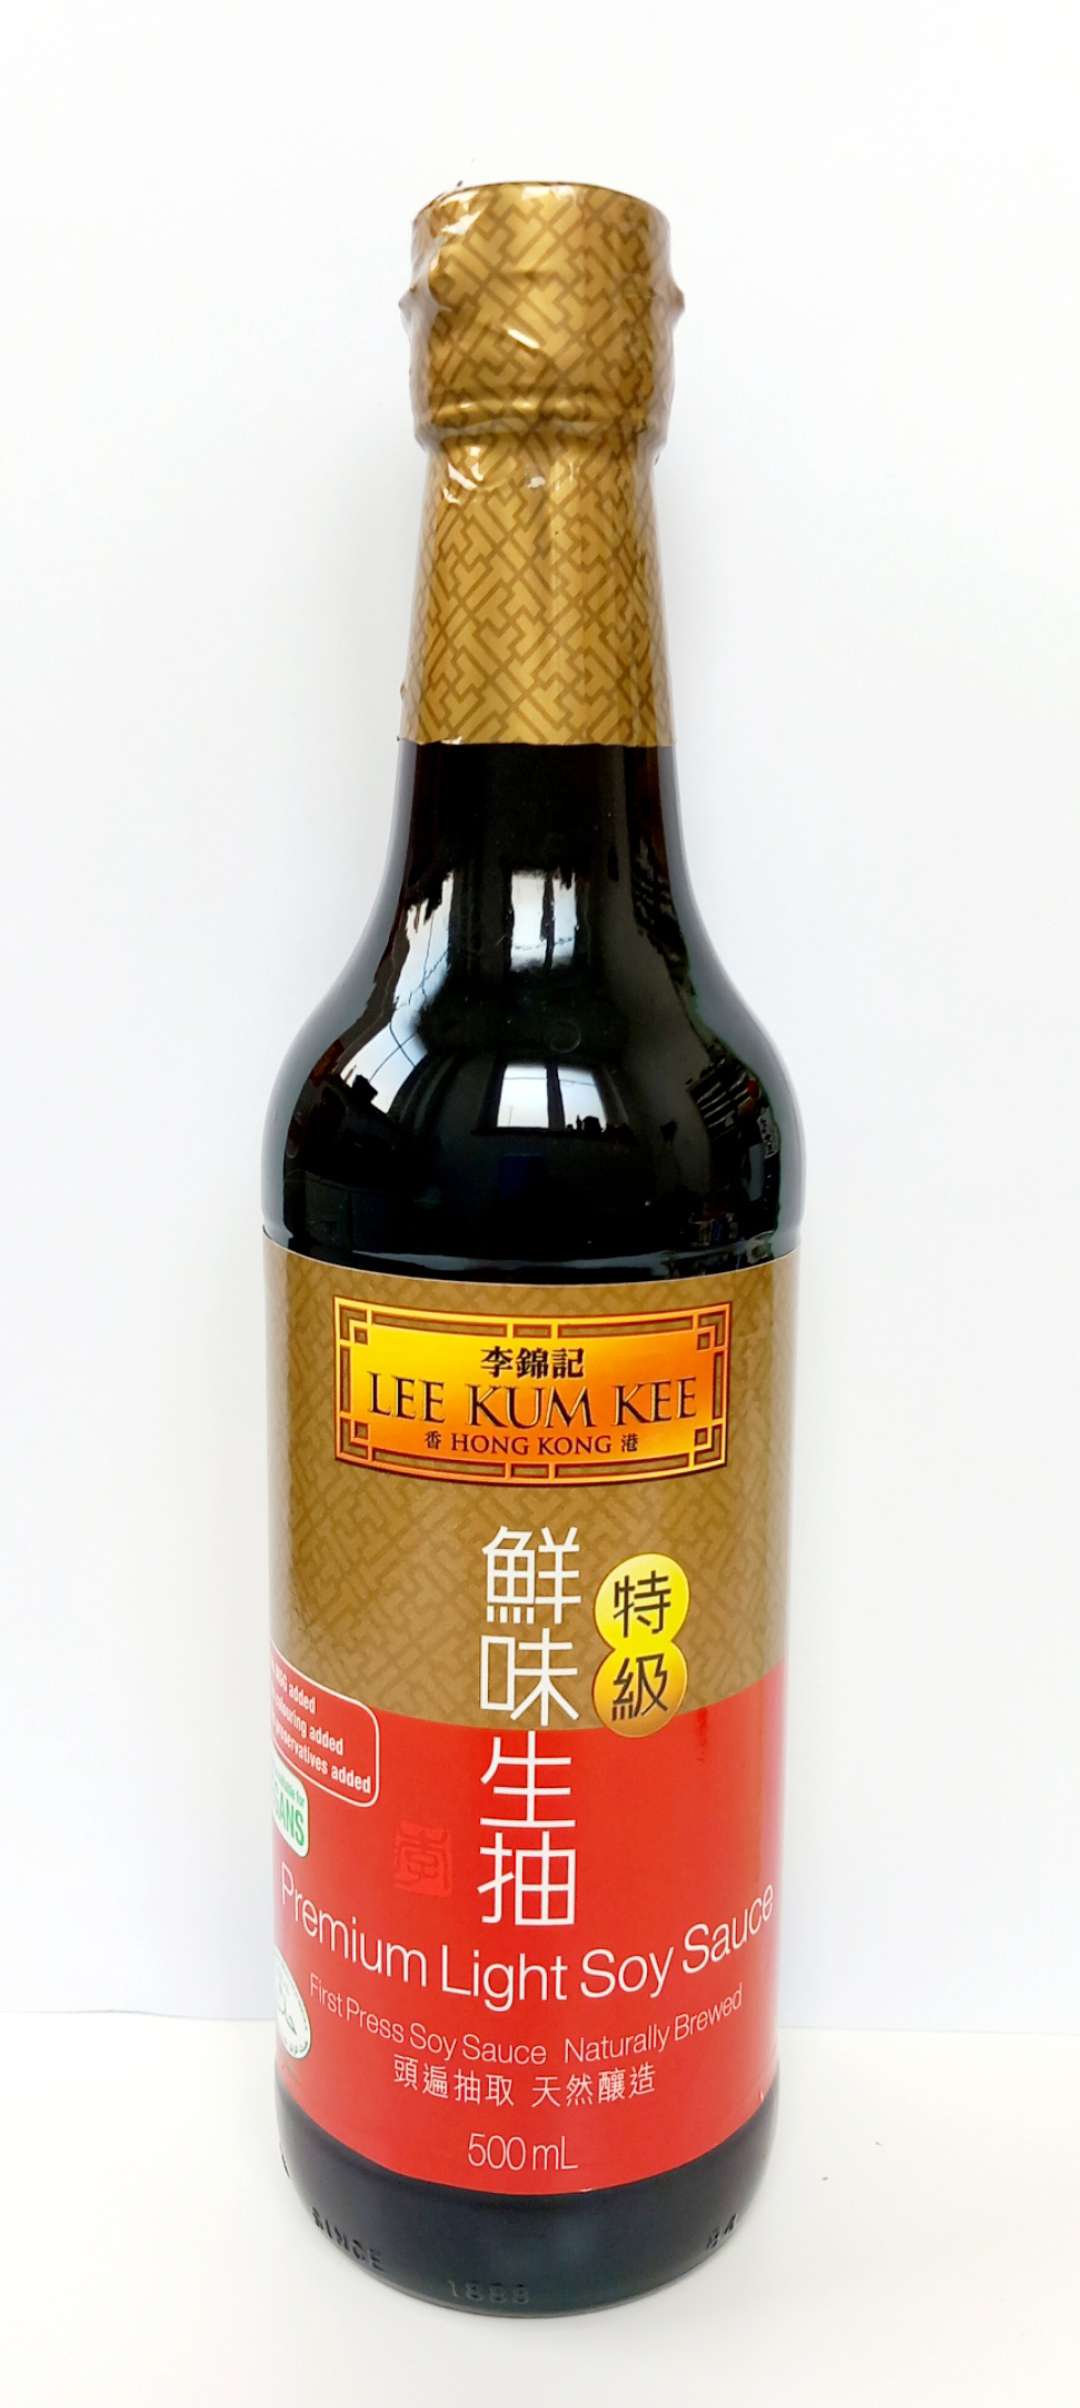 LKK Premium Light Soy Sauce 500ml